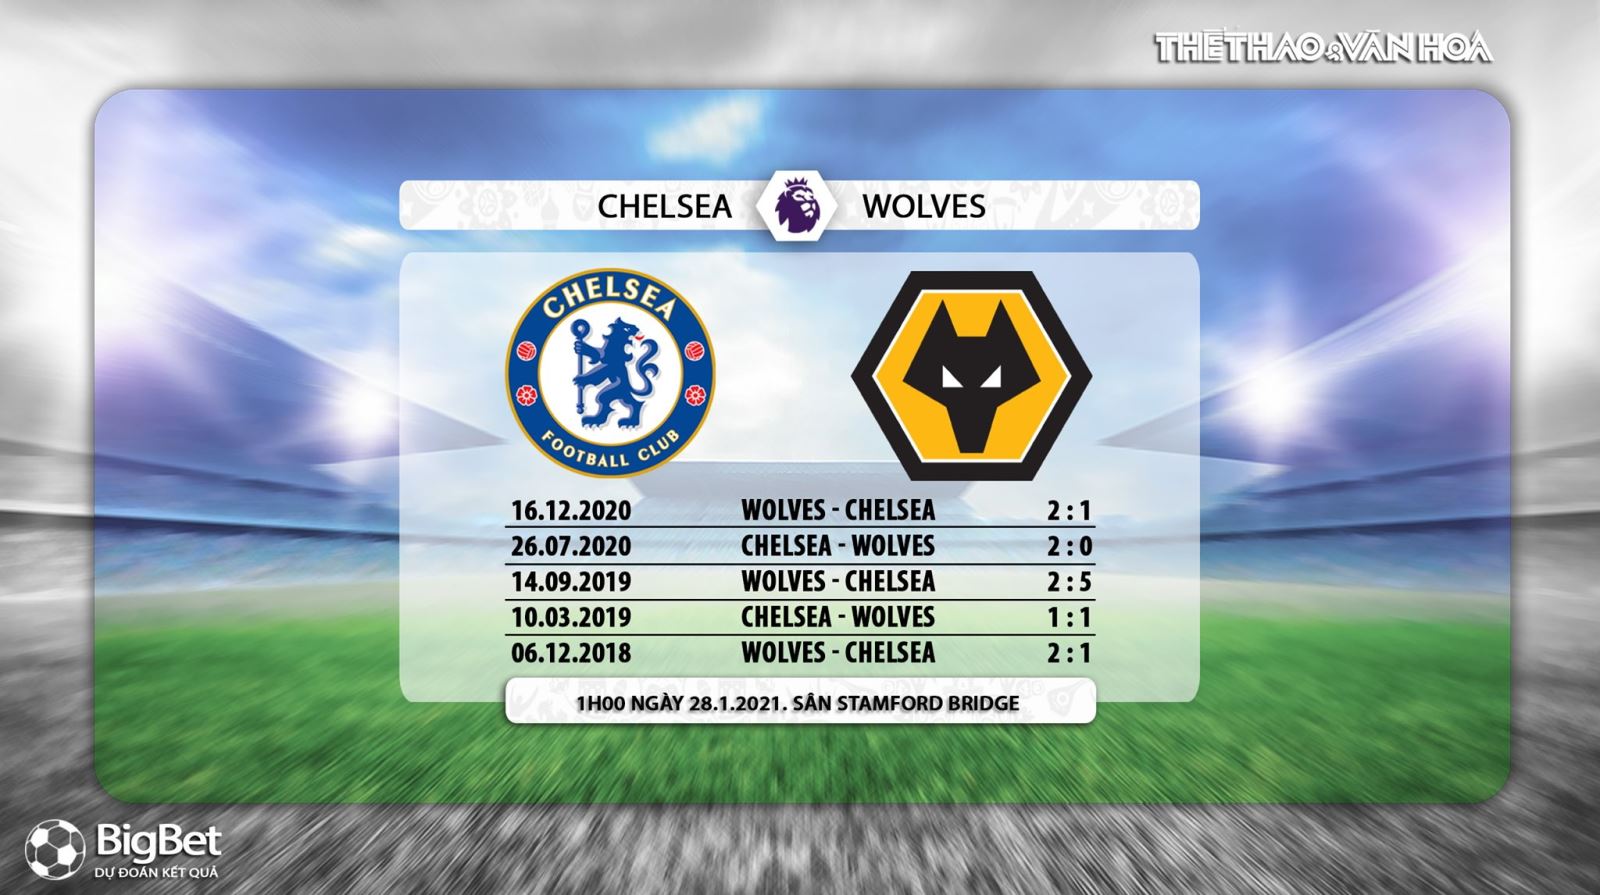 Keo nha cai, kèo nhà cái, Chelsea vs Wolves, K+, K+PM trực tiếp bóng đá Ngoại hạng Anh, Trực tiếp Chelsea đấu với Wolves, Kèo bóng đá Chelsea vs Wolves, Chelsea